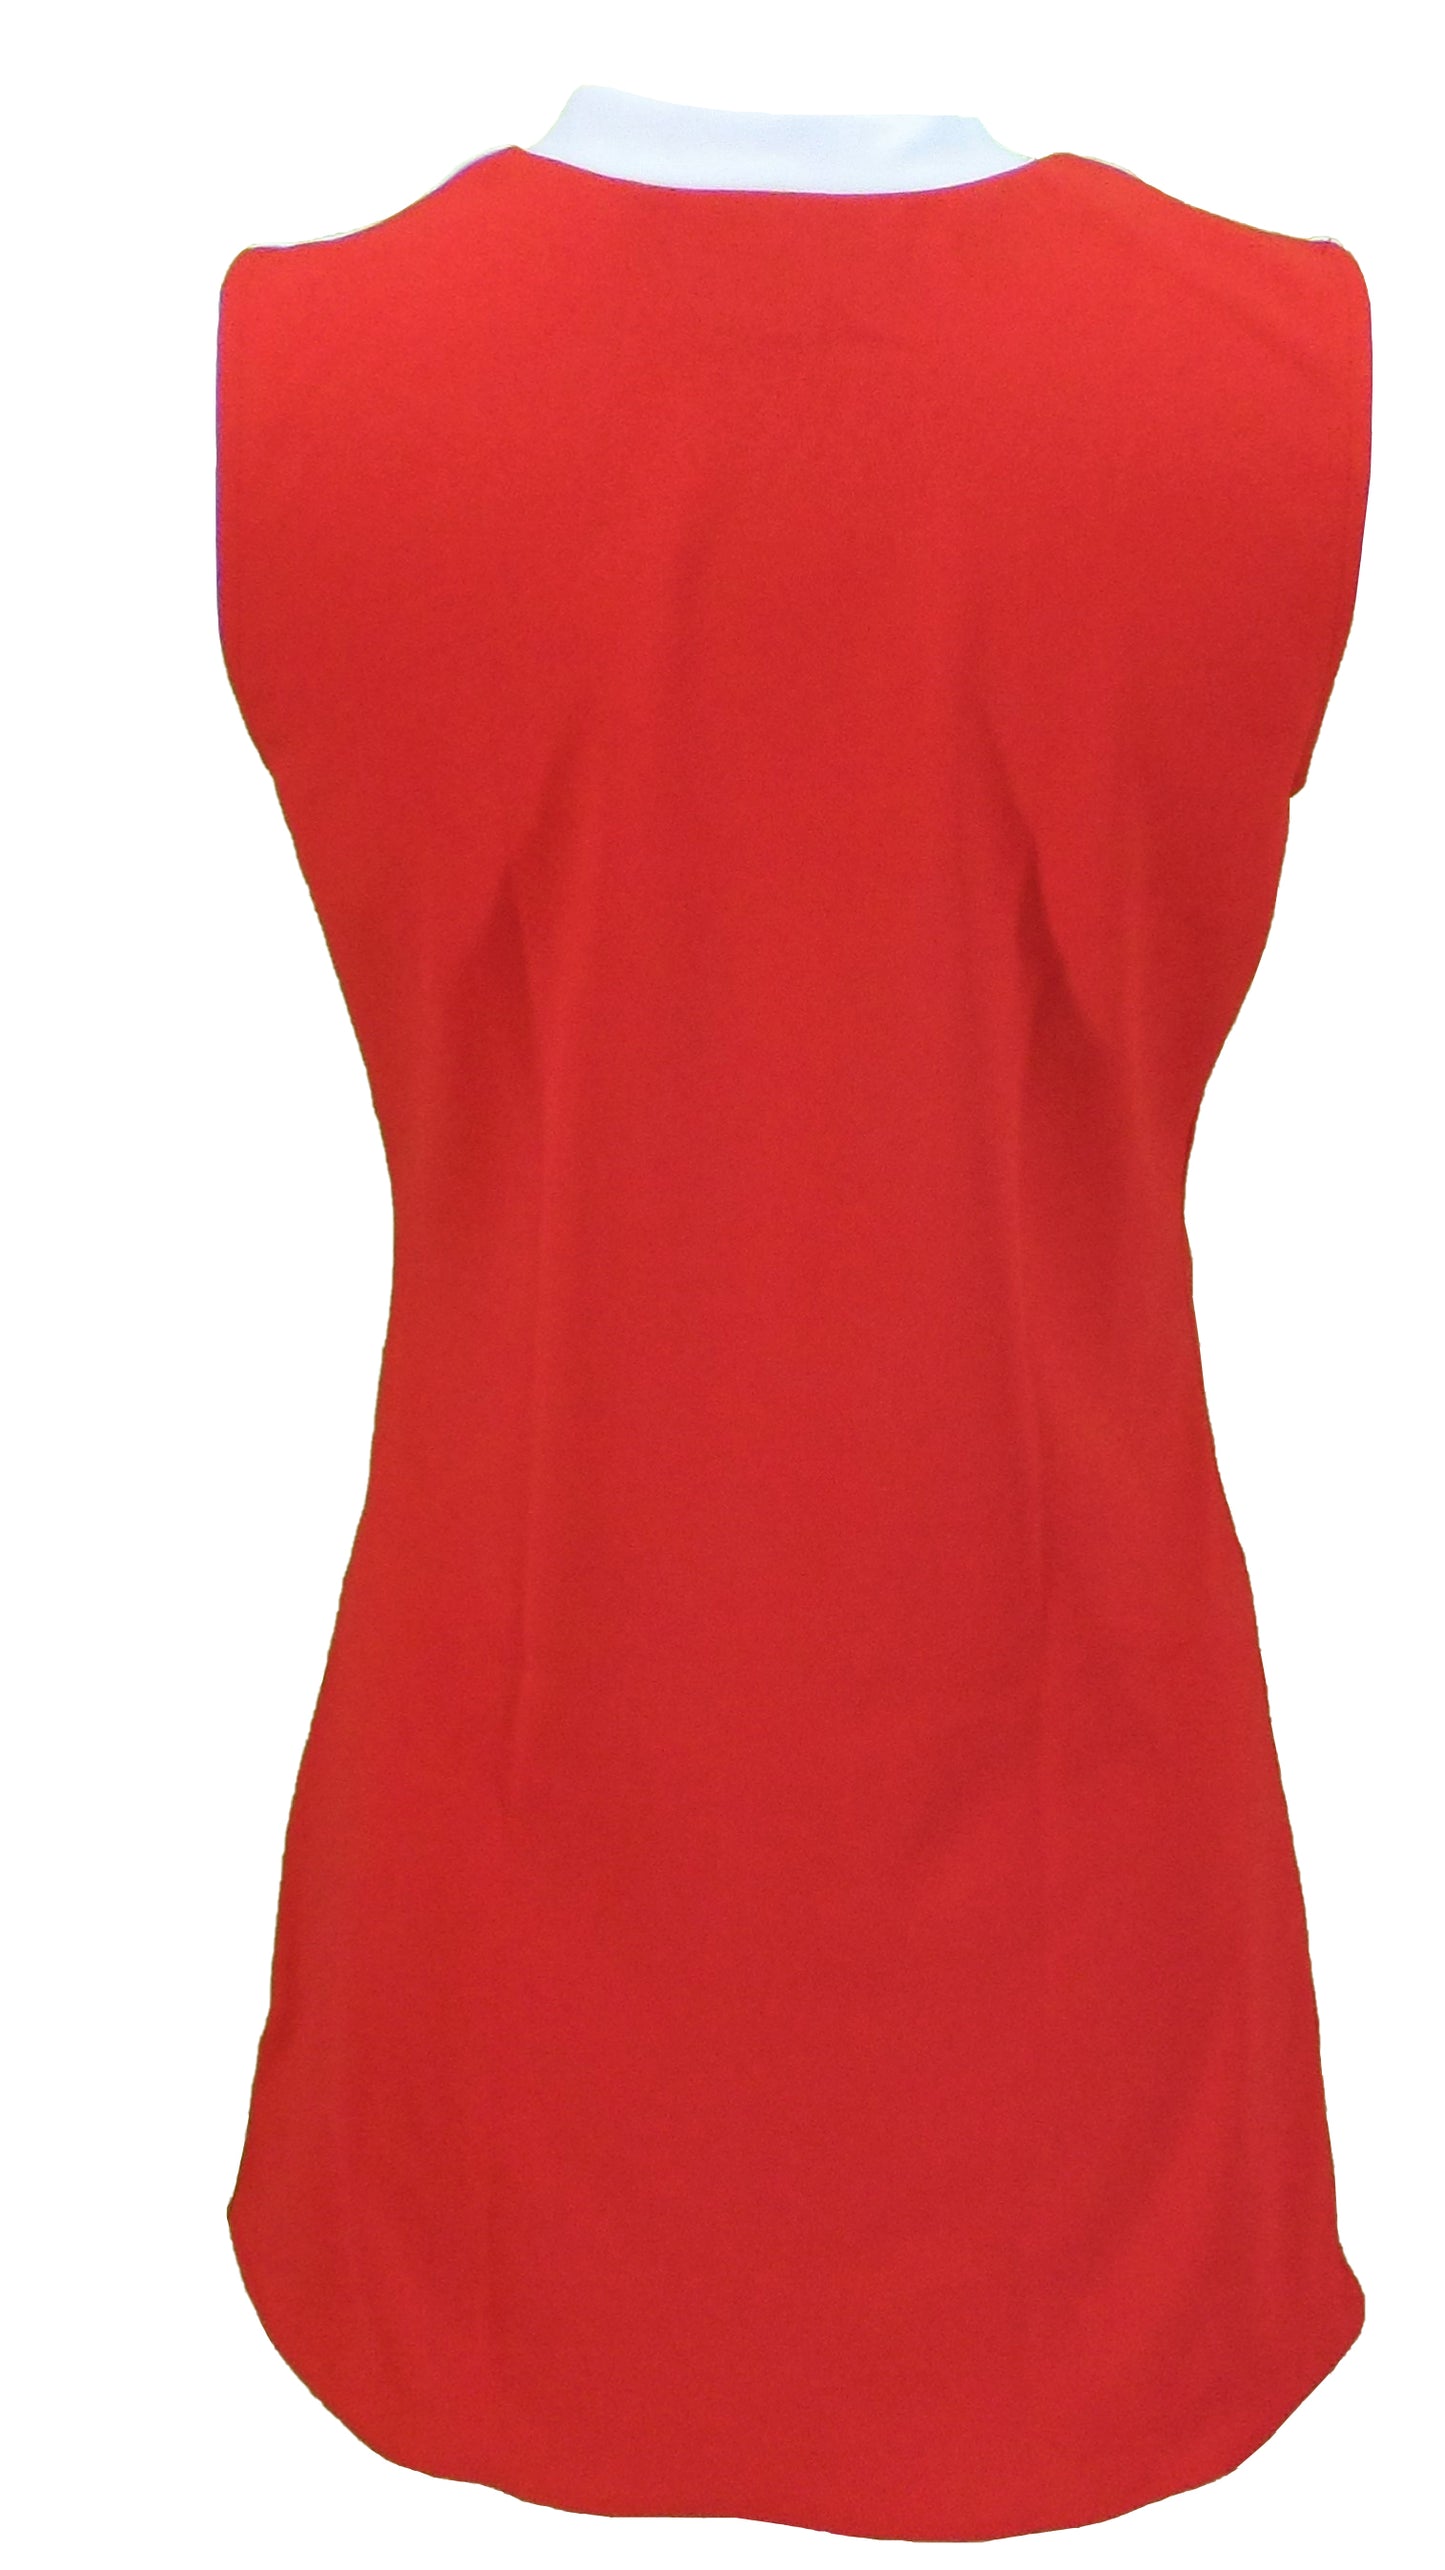 Mod Dress für Damen in Rot und Weiß mit Target-Knöpfen